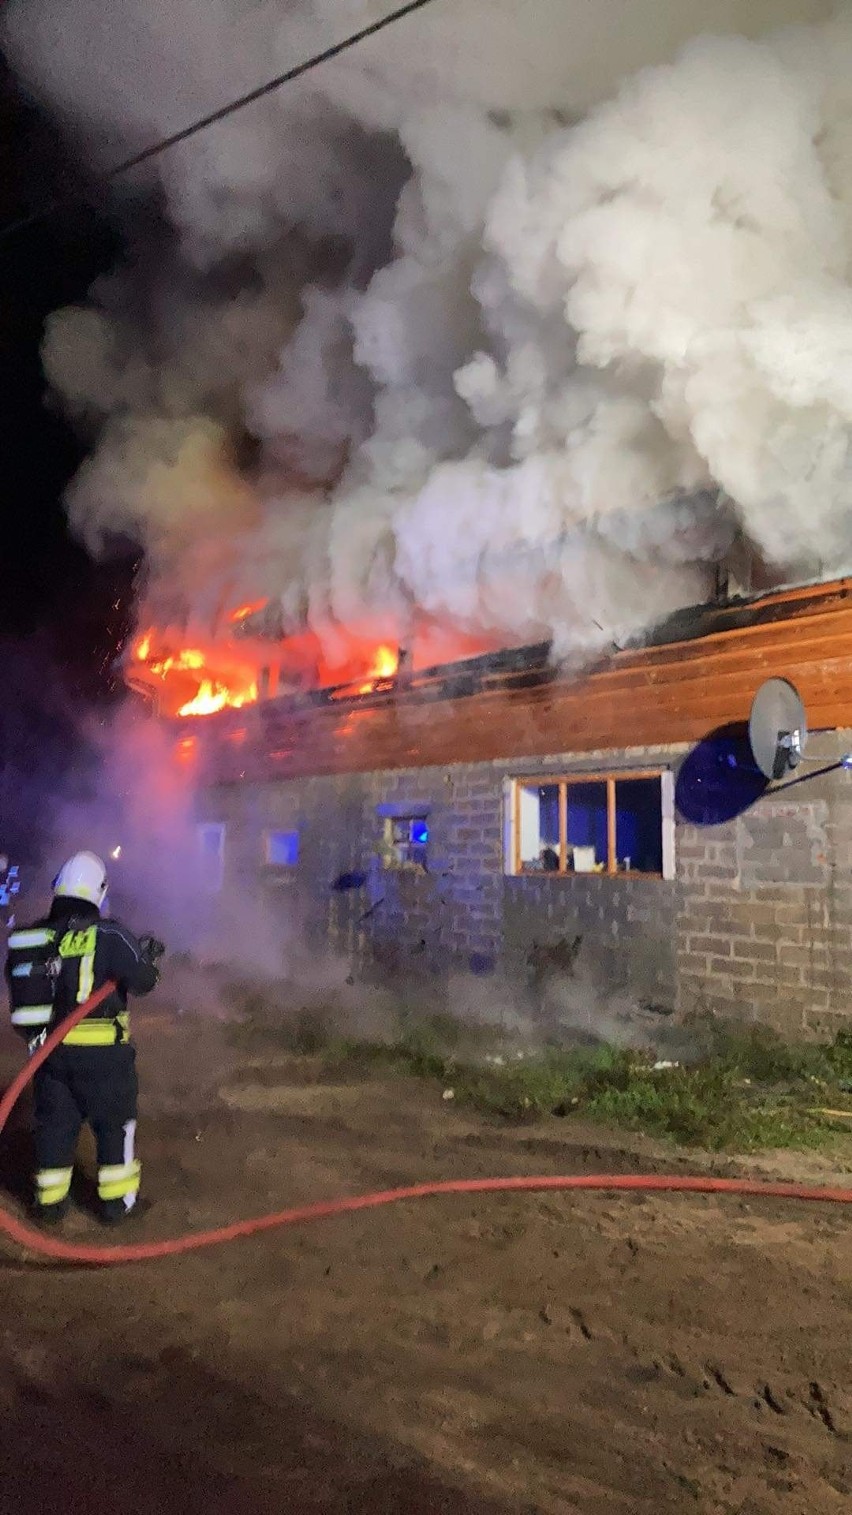 Pożar budynku gospodarczego w Brodzie 8.11.2021. Straty oszacowano na ponad 200 tysięcy złotych